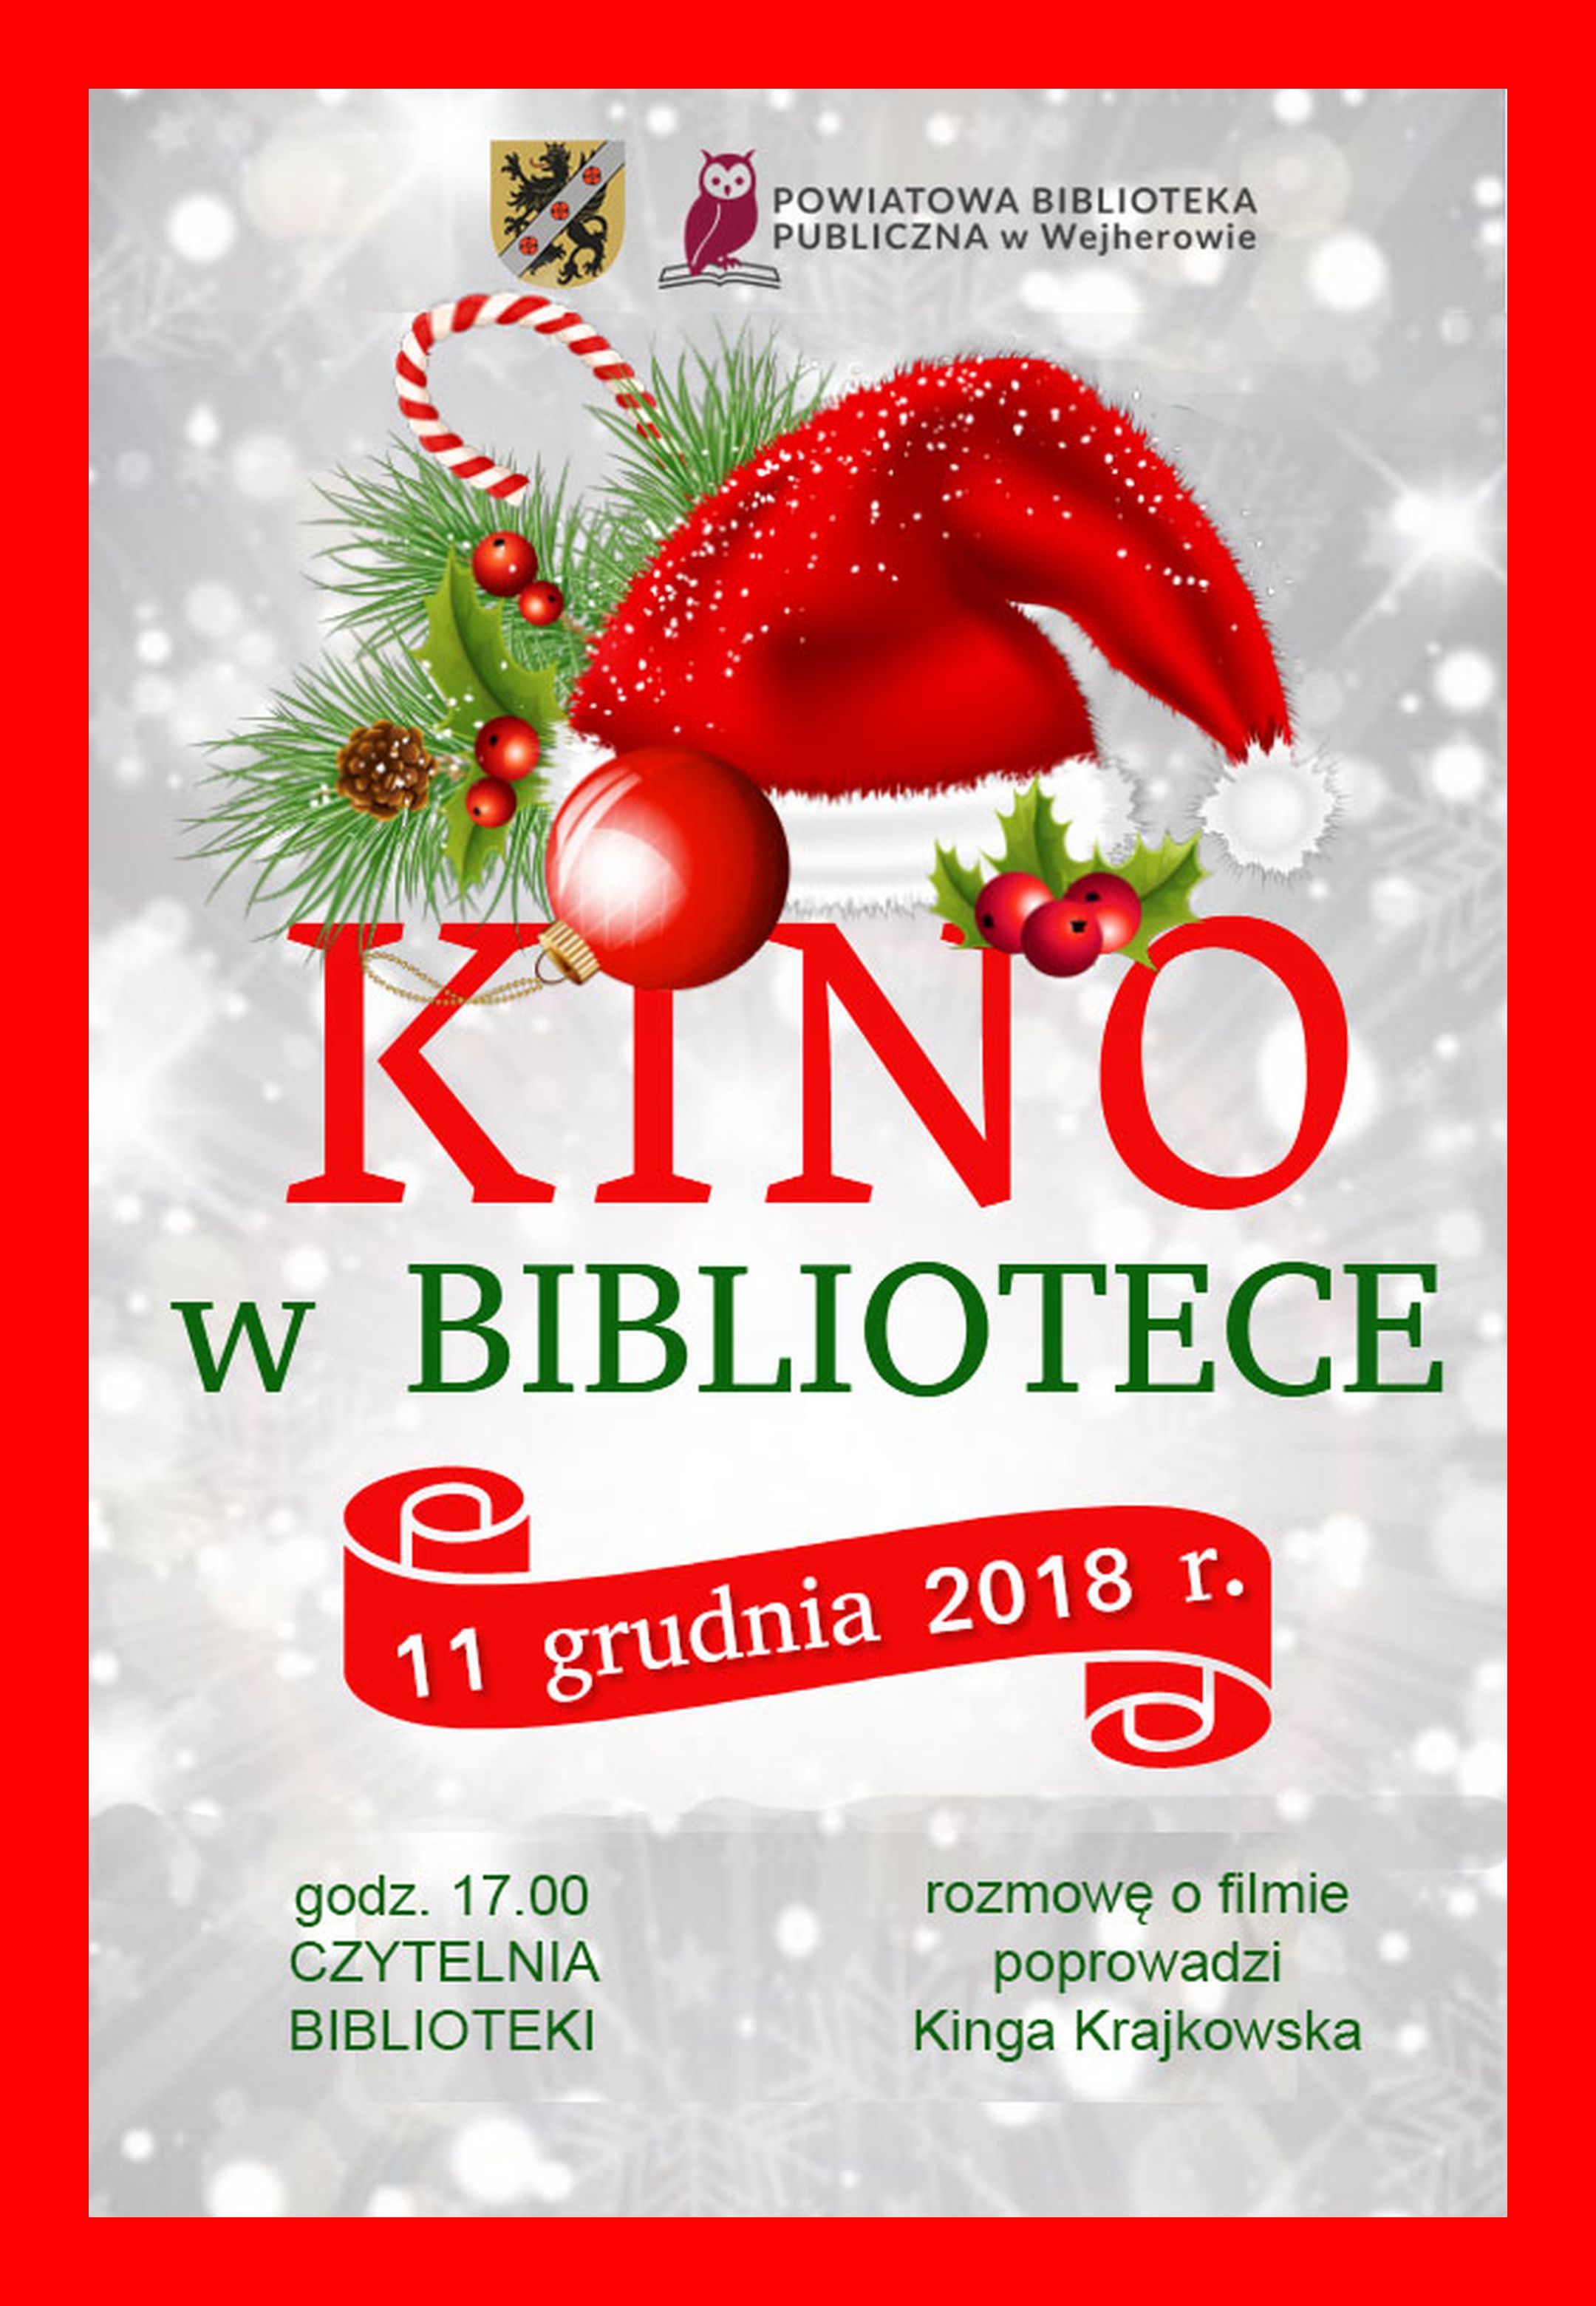 KinowBibliotece11.12.2018